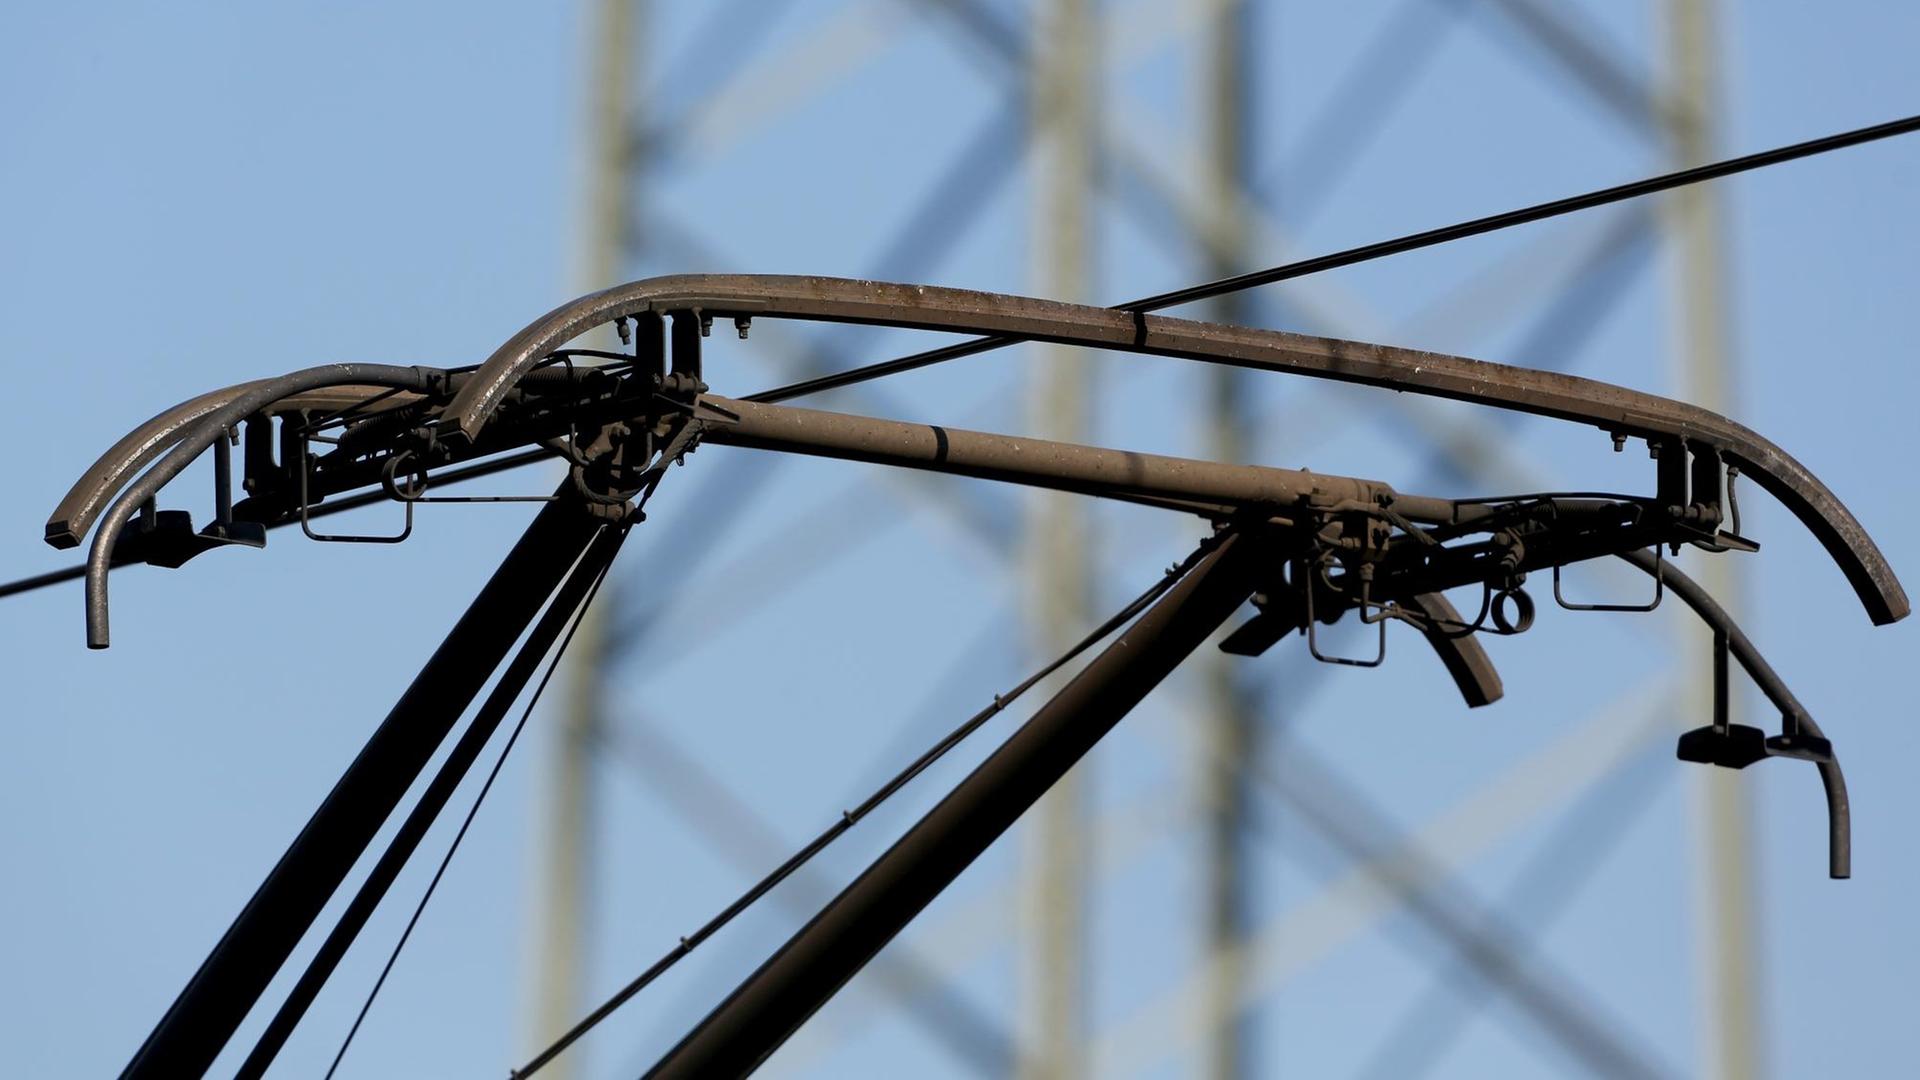 Das Bild zeigt den Stromabnehmer und das Kabel der Oberleitung, dahinter unscharf ein Strommast.